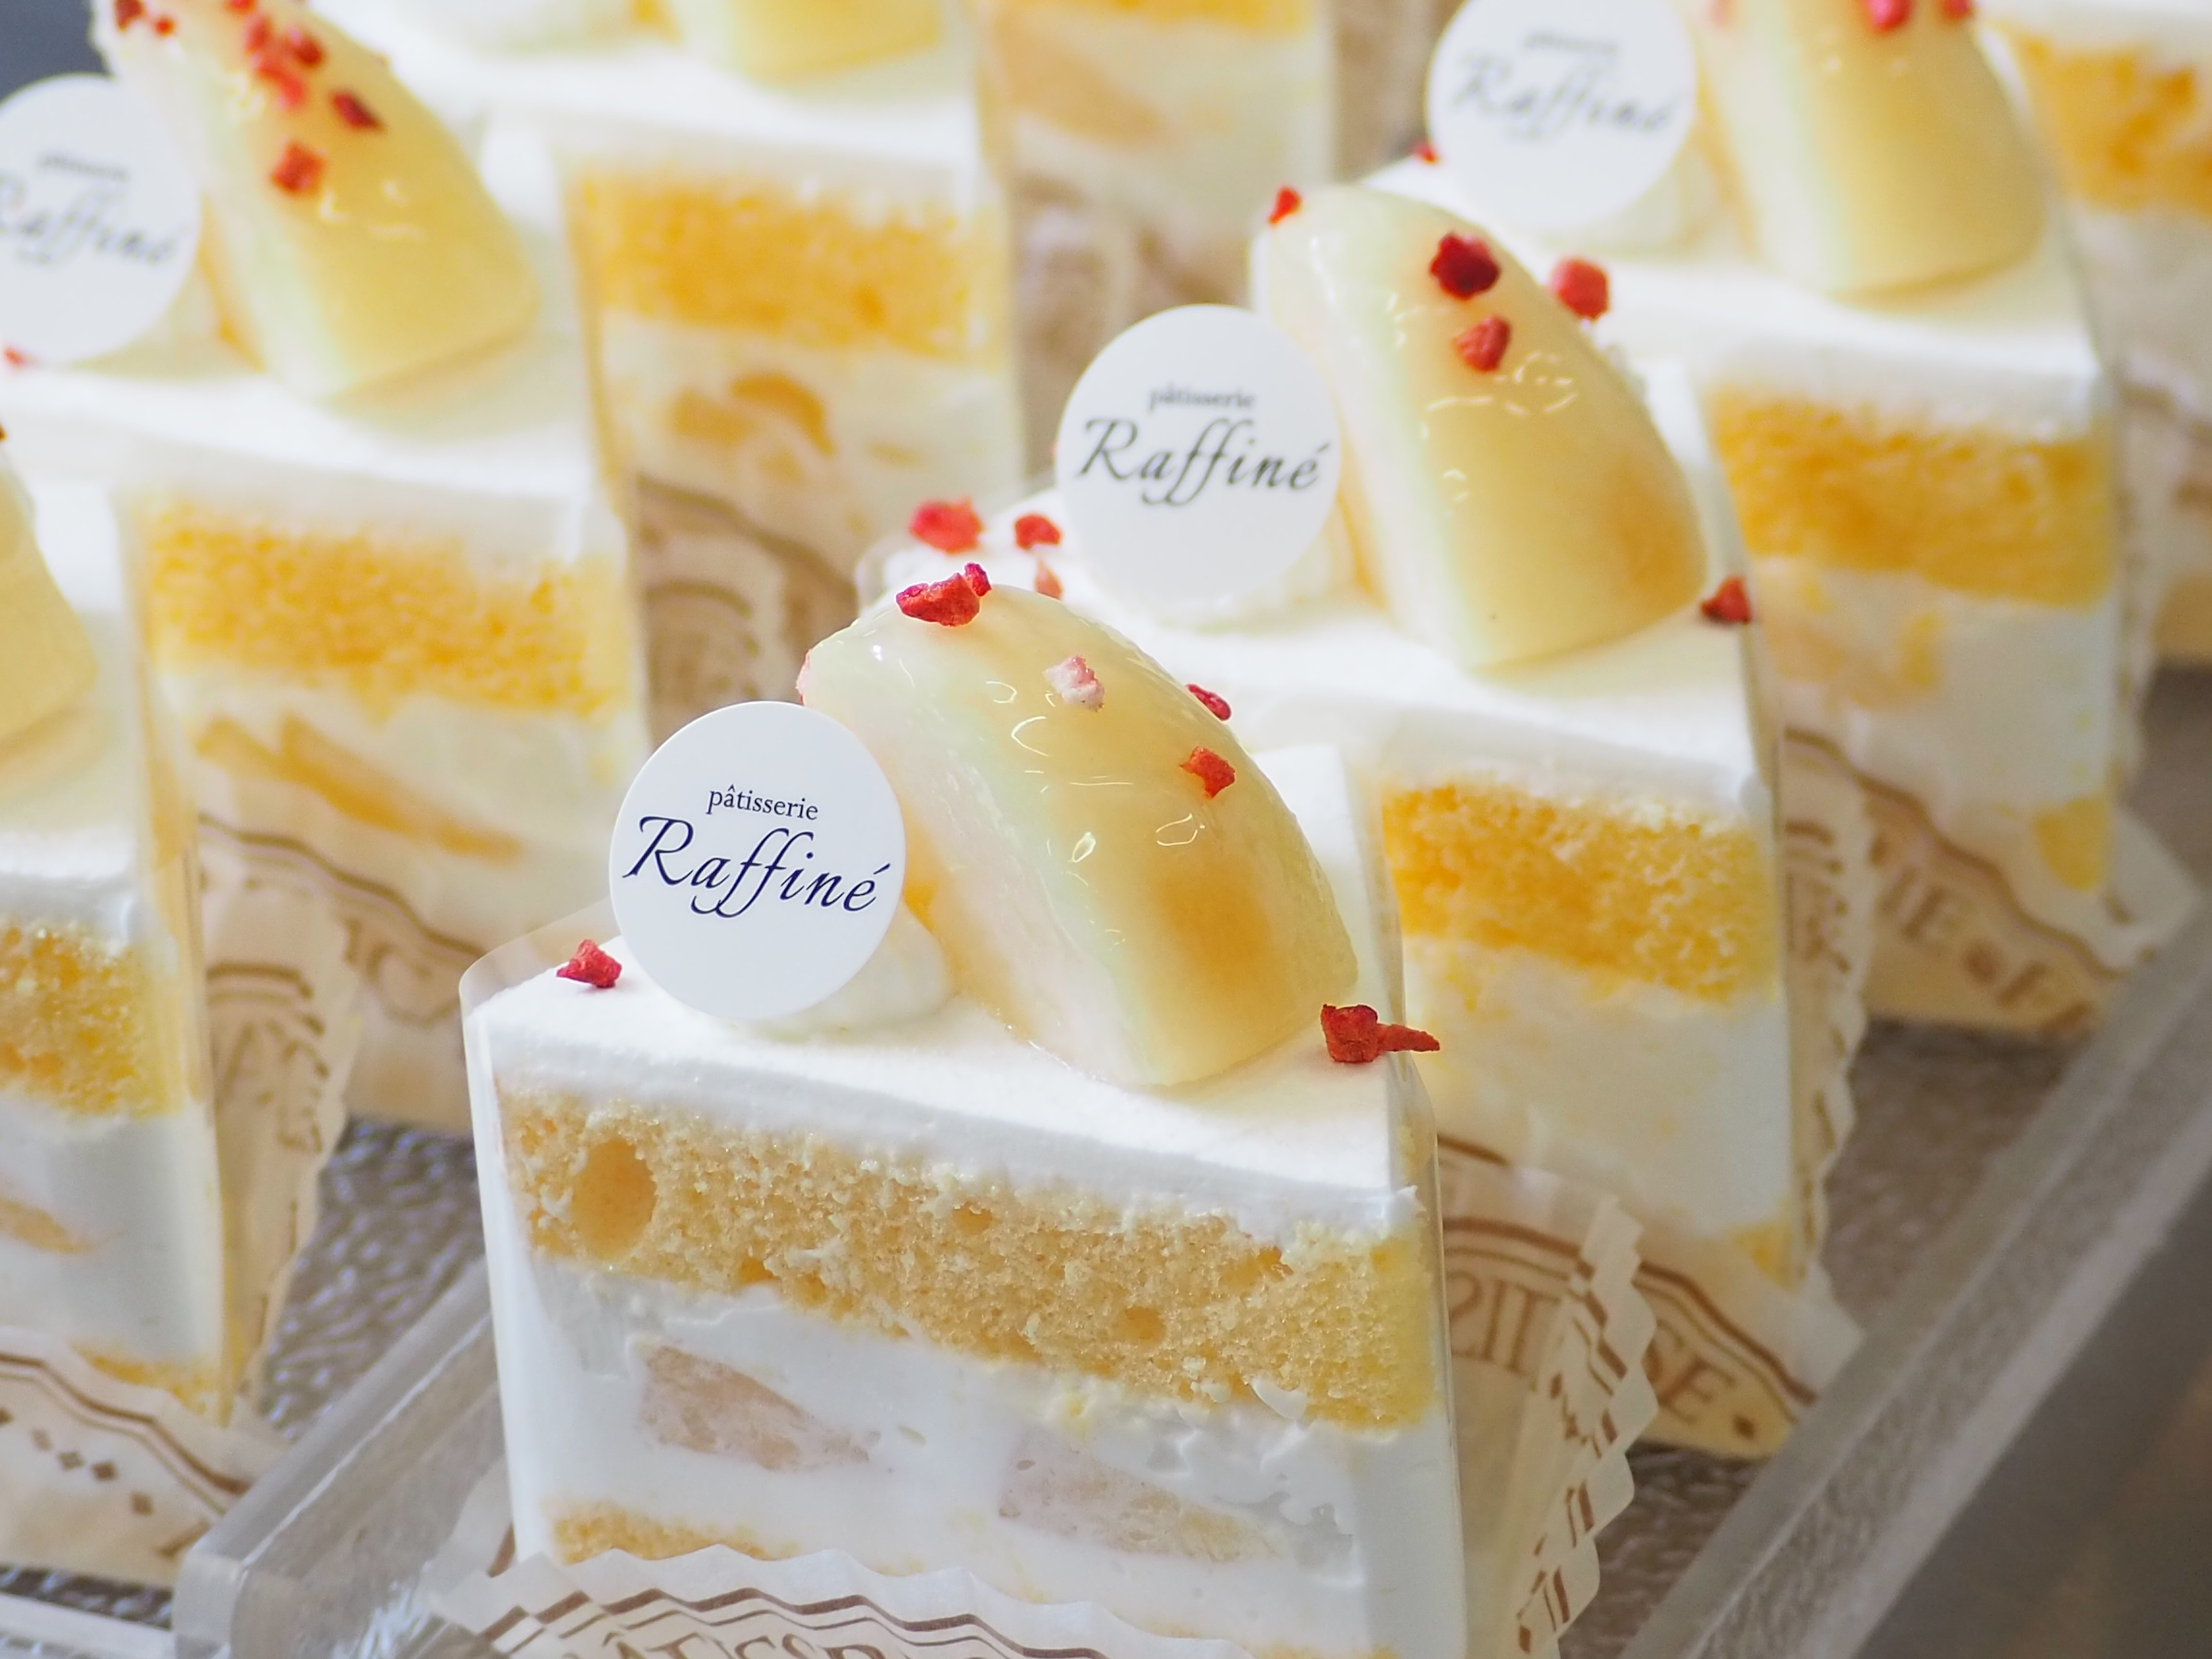 桃のショートケーキ始まりました Patisserie Raffine パティスリーラフィネ 石川県金沢市のケーキ屋